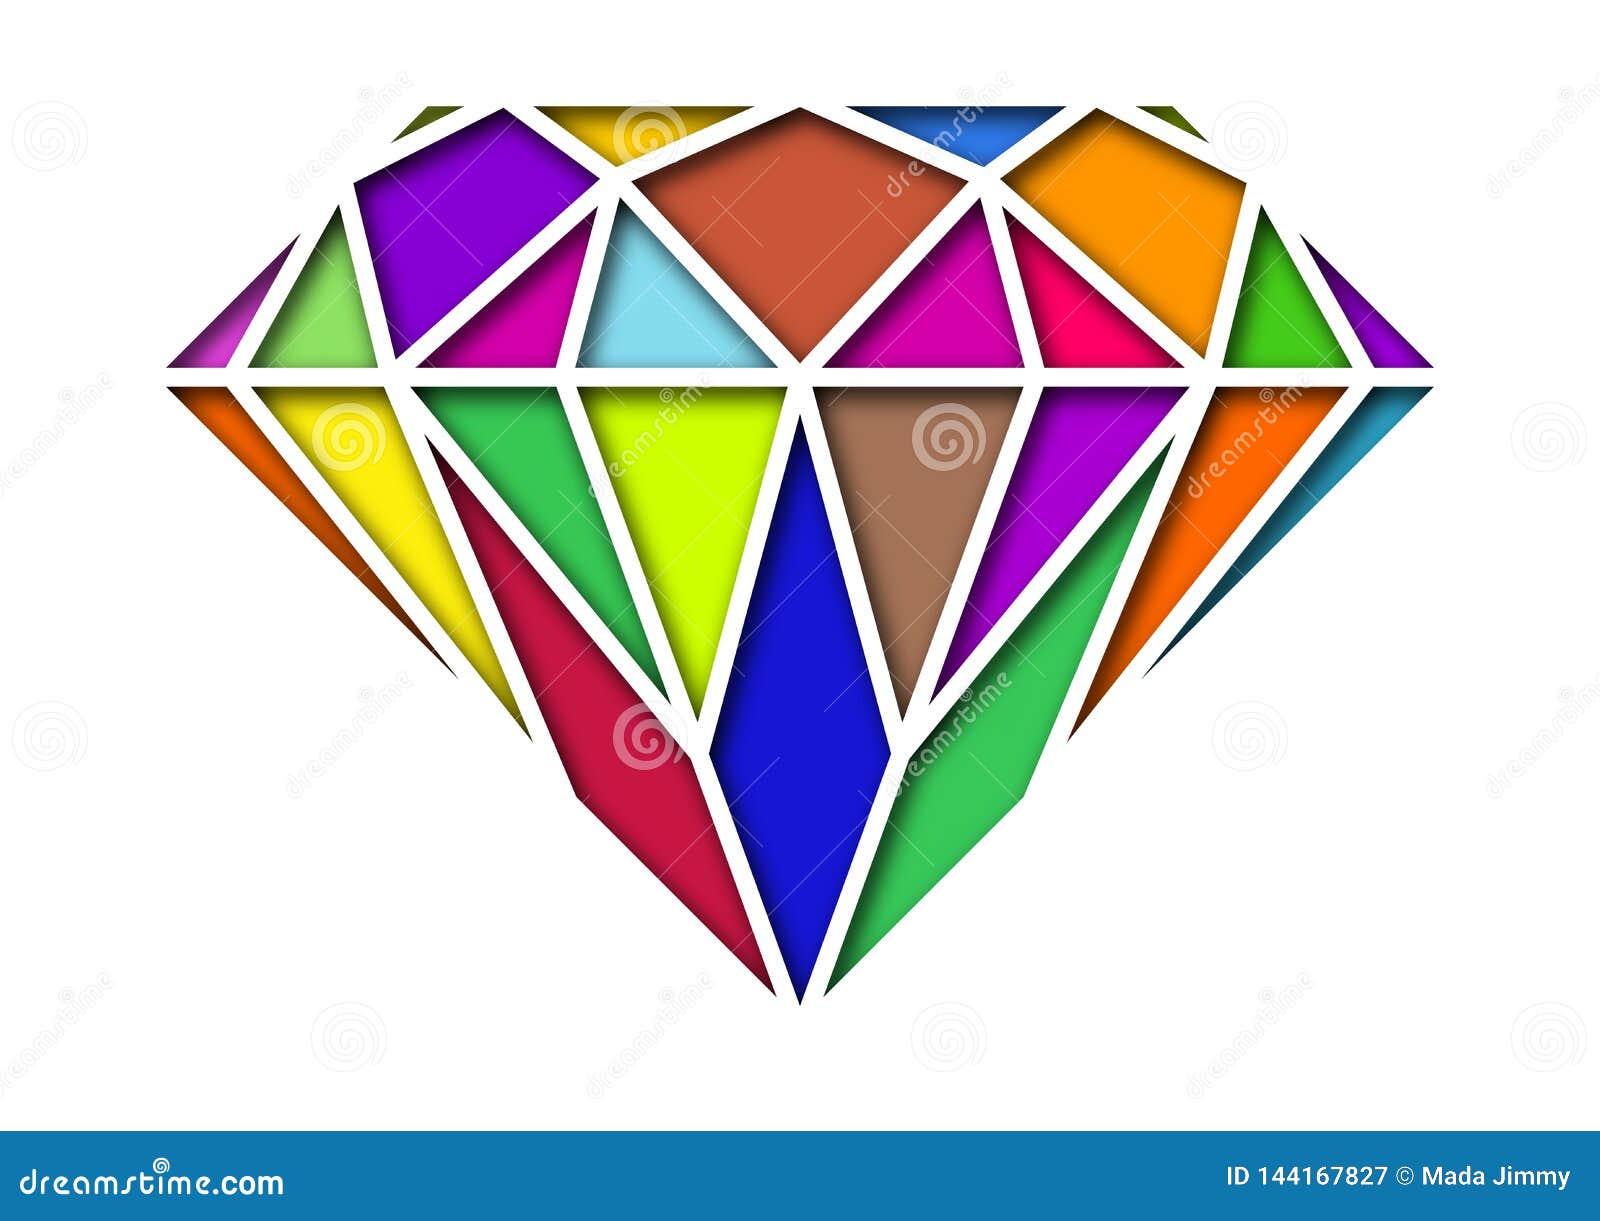 diamond  random color